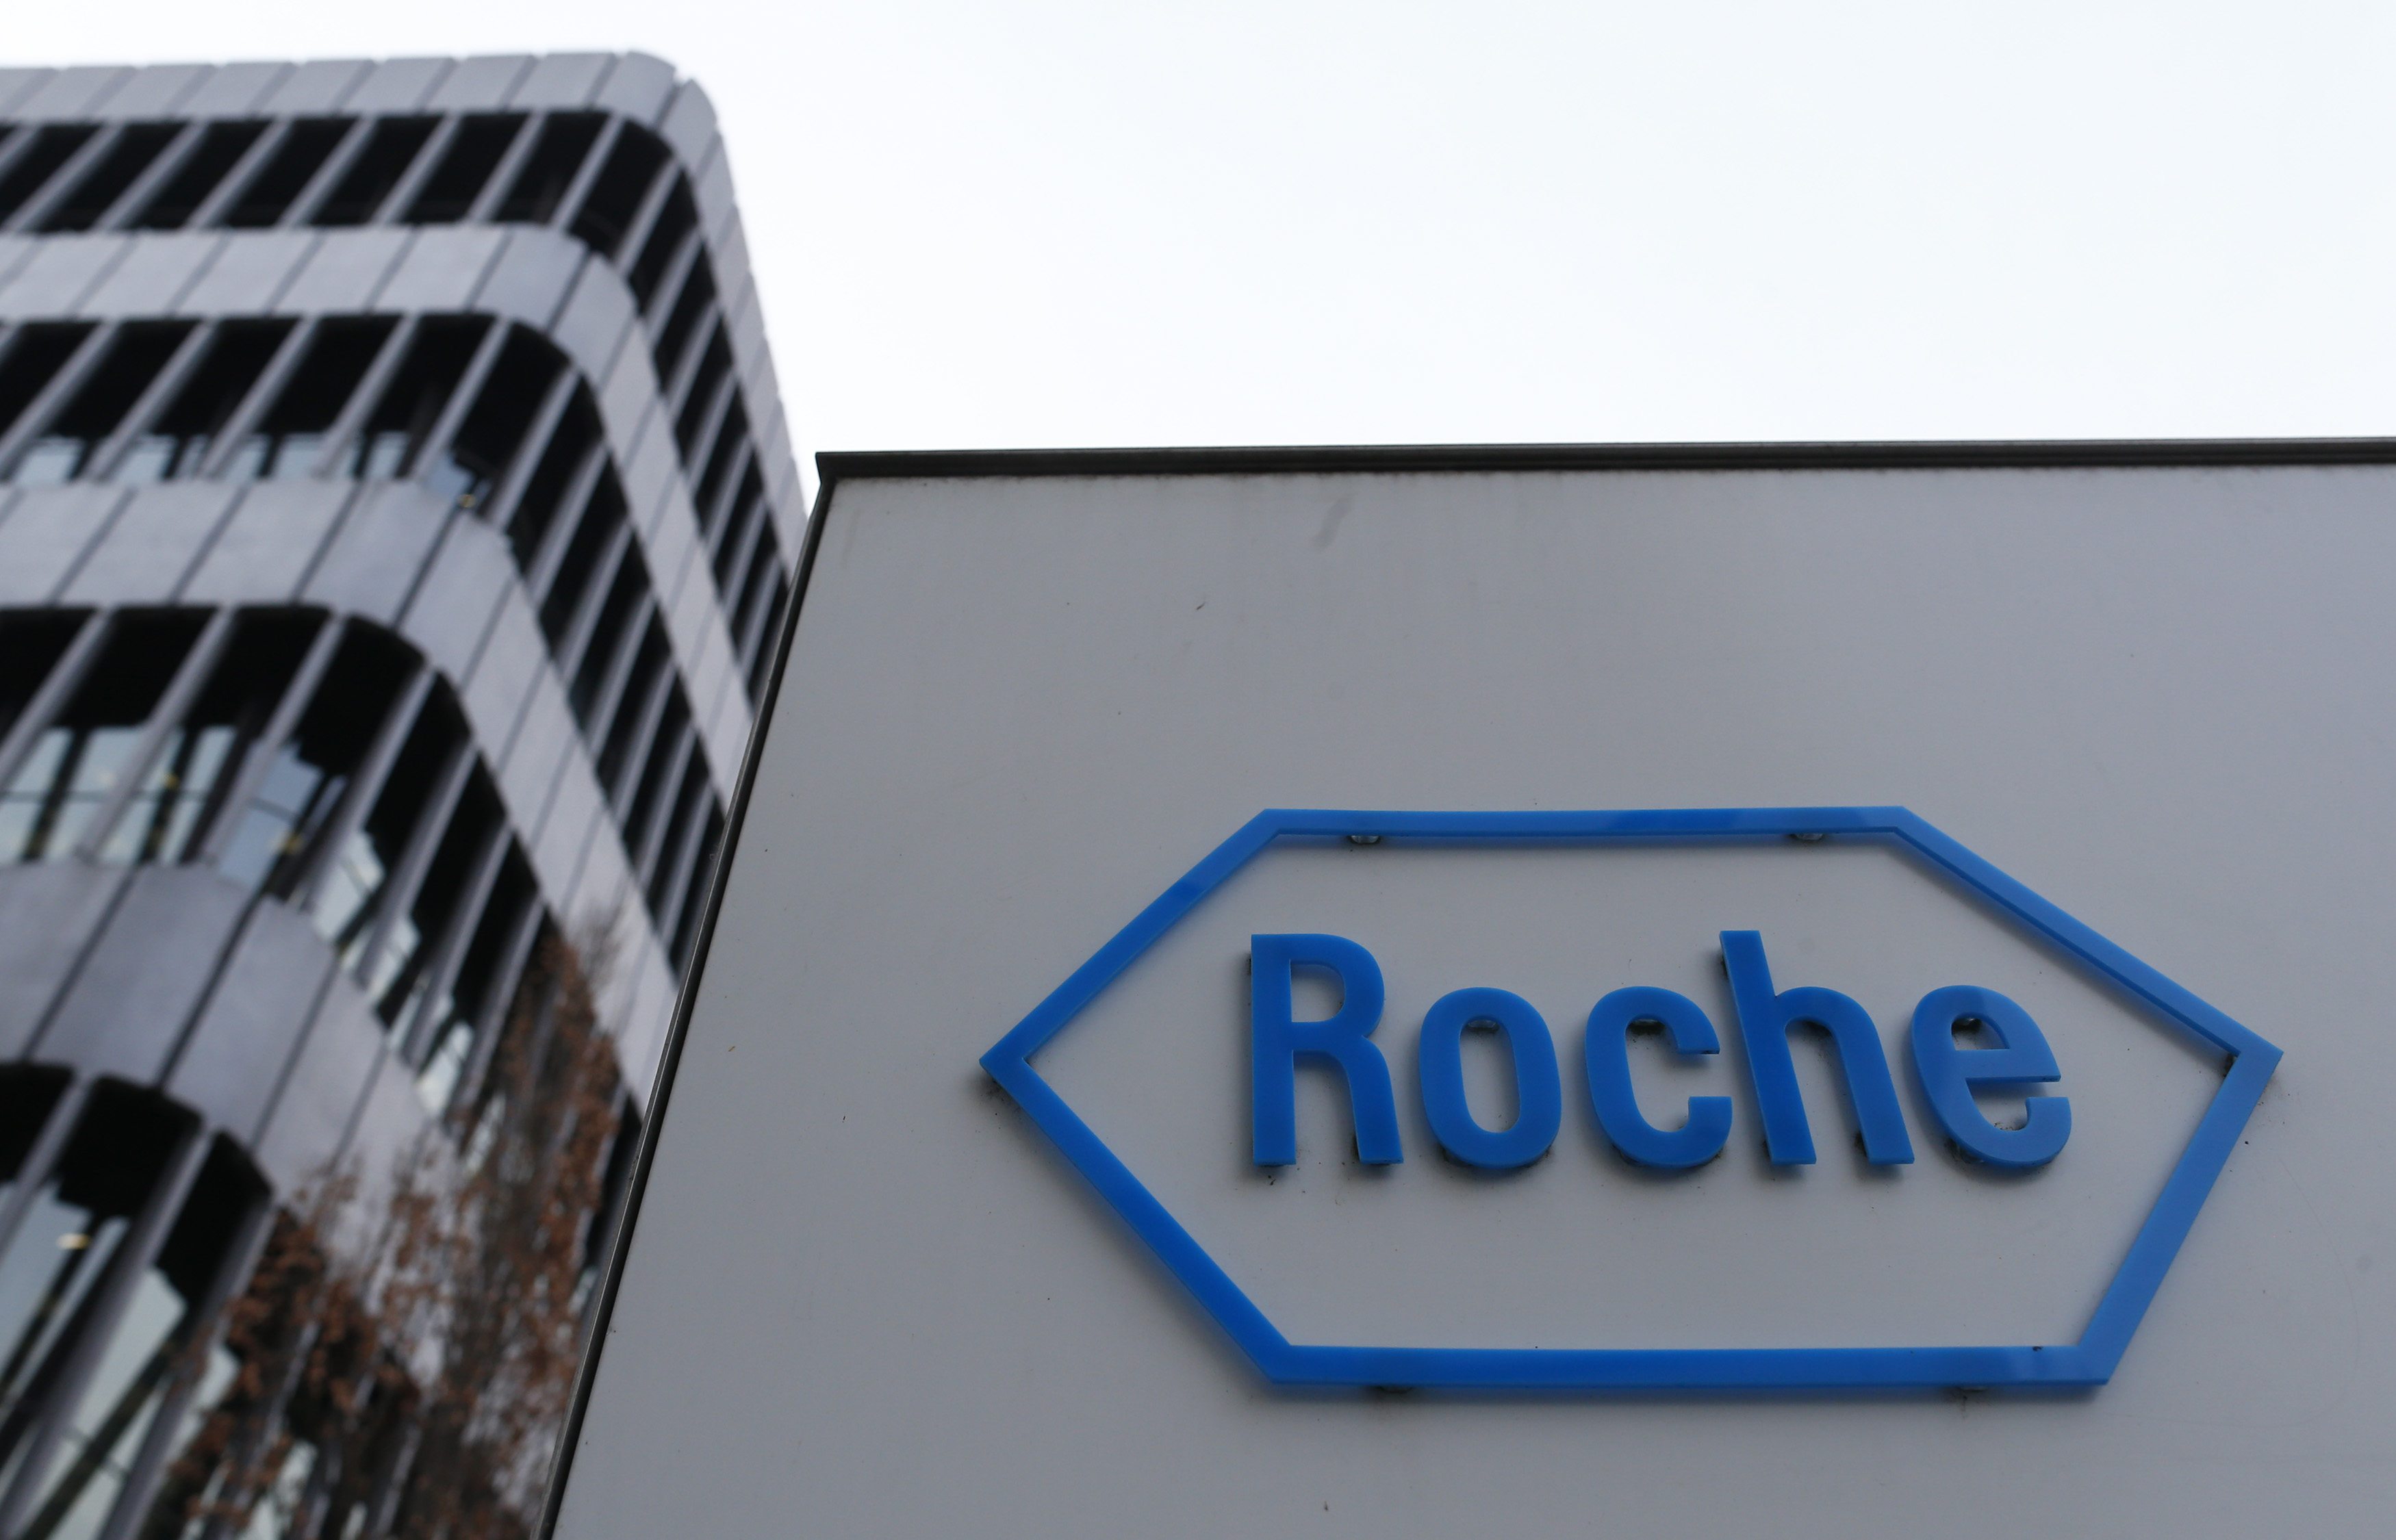 Roche: Η πιο βιώσιμη εταιρεία στο χώρο της υγείας σύμφωνα με τους δείκτες βιωσιμότητας Dow Jones